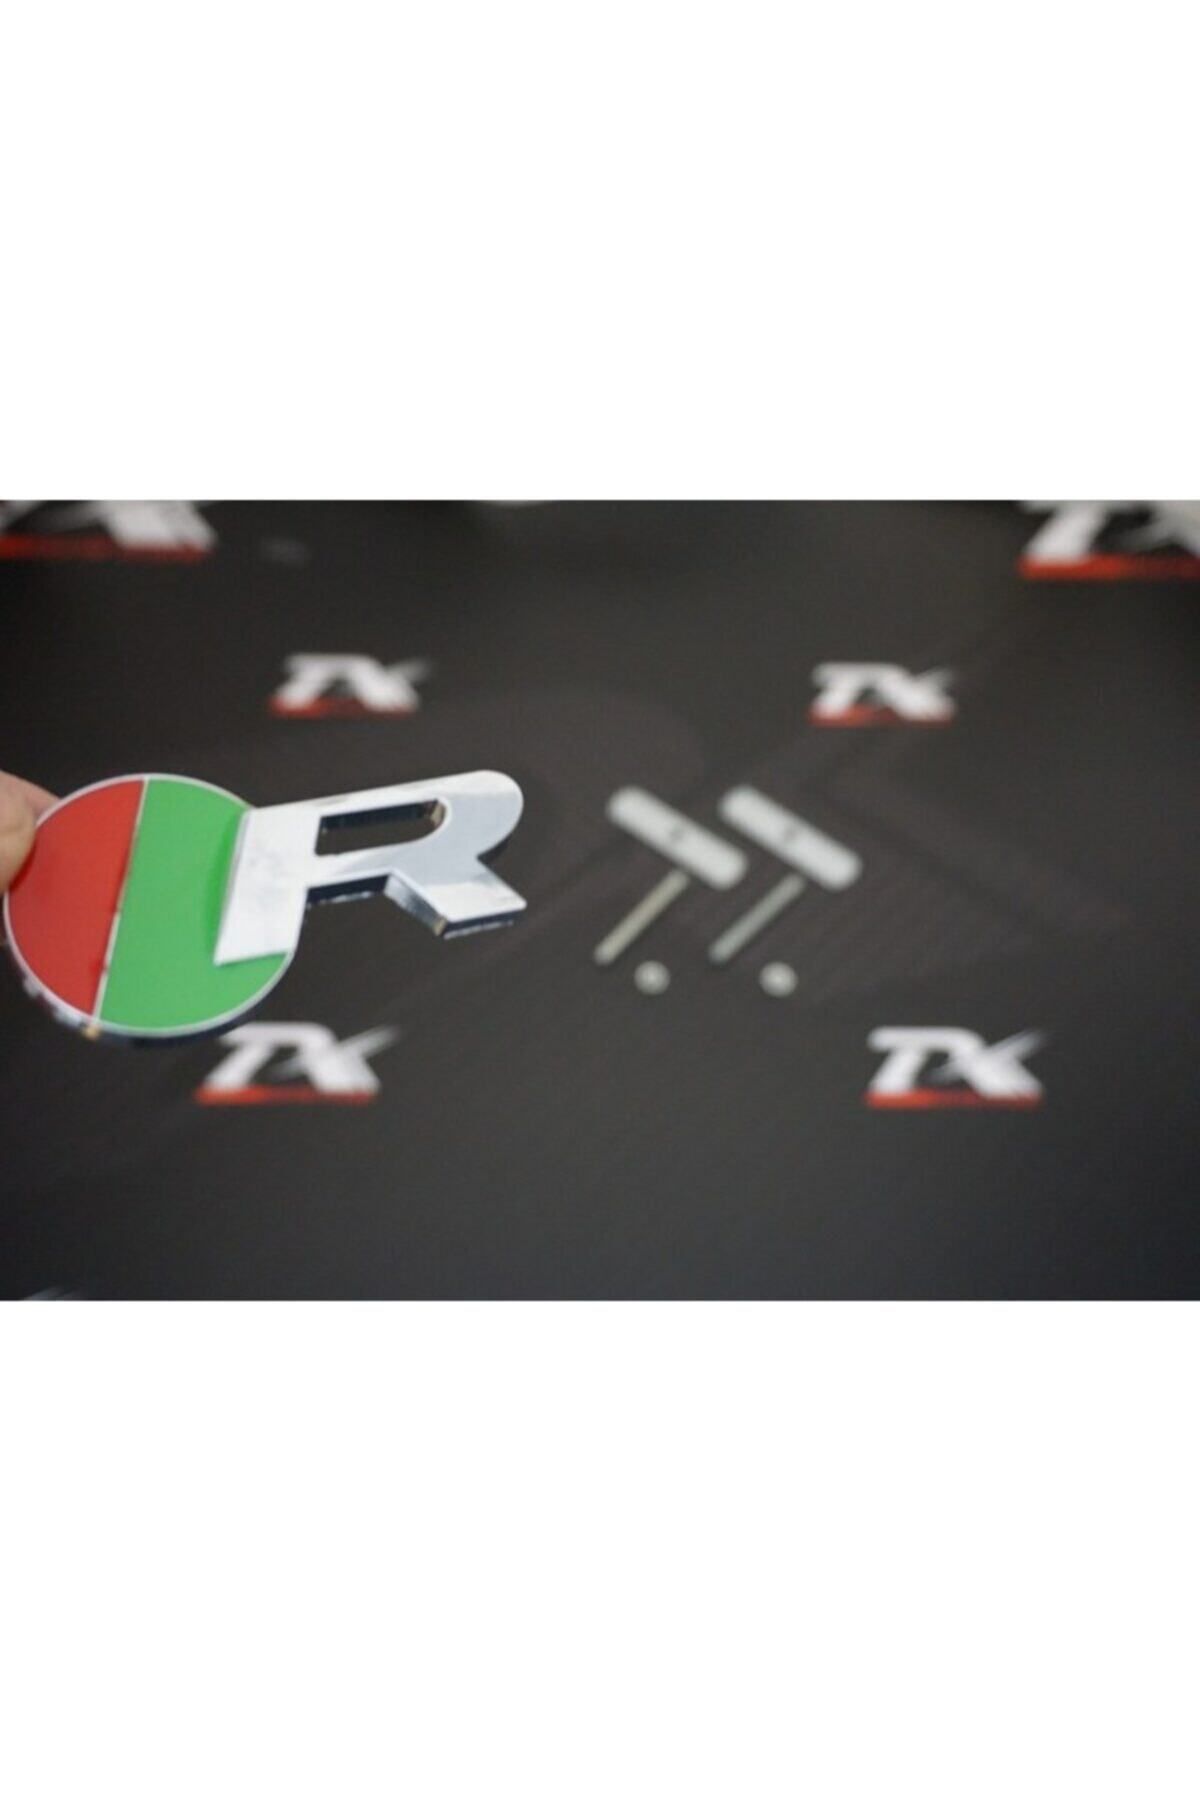 Jaguar Dk Tuning R Logo Ön Panjur Vidalı 3d Krom Metal Logo Amblem